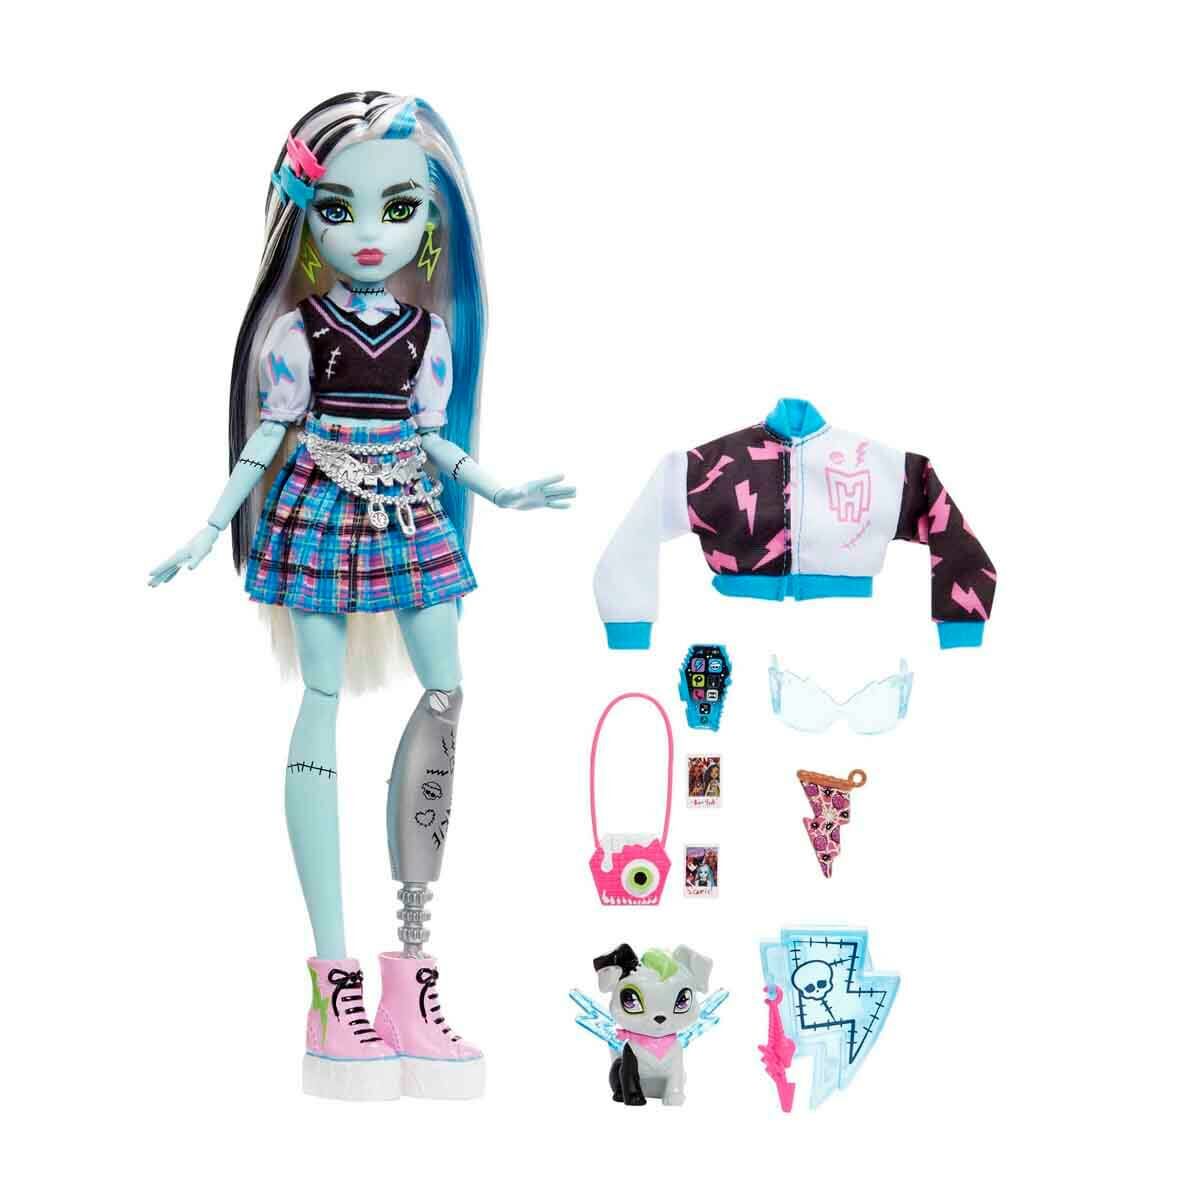 Monster High Ana Karakter Bebekler Frankie Stein